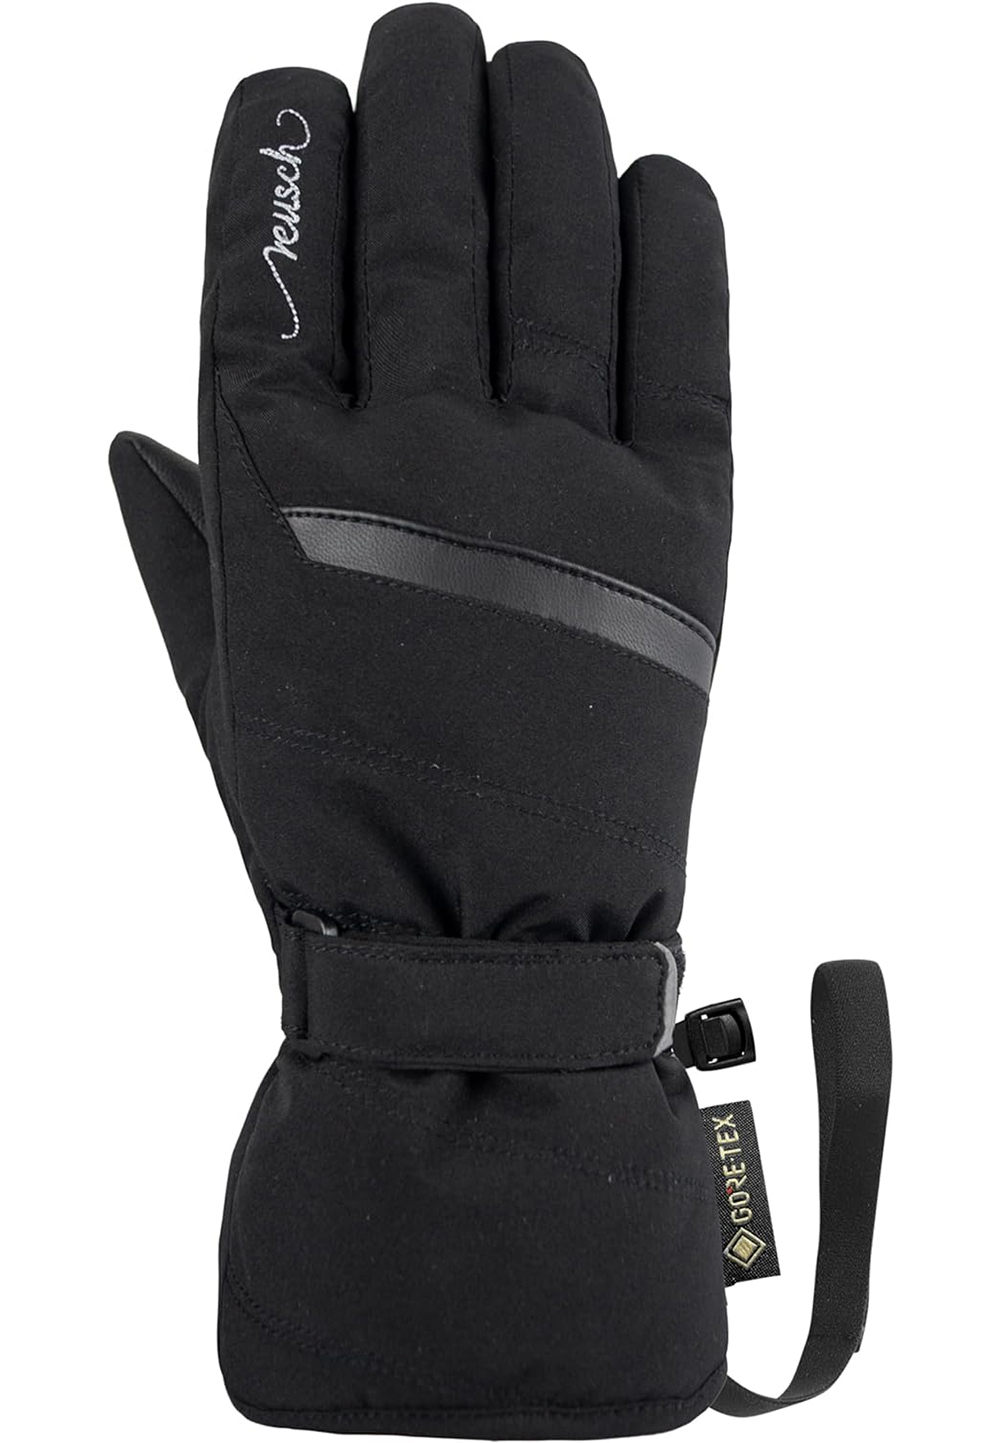 Reusch Damen Sandy GORE-TEX Handschuhe 6290326 schwarz 